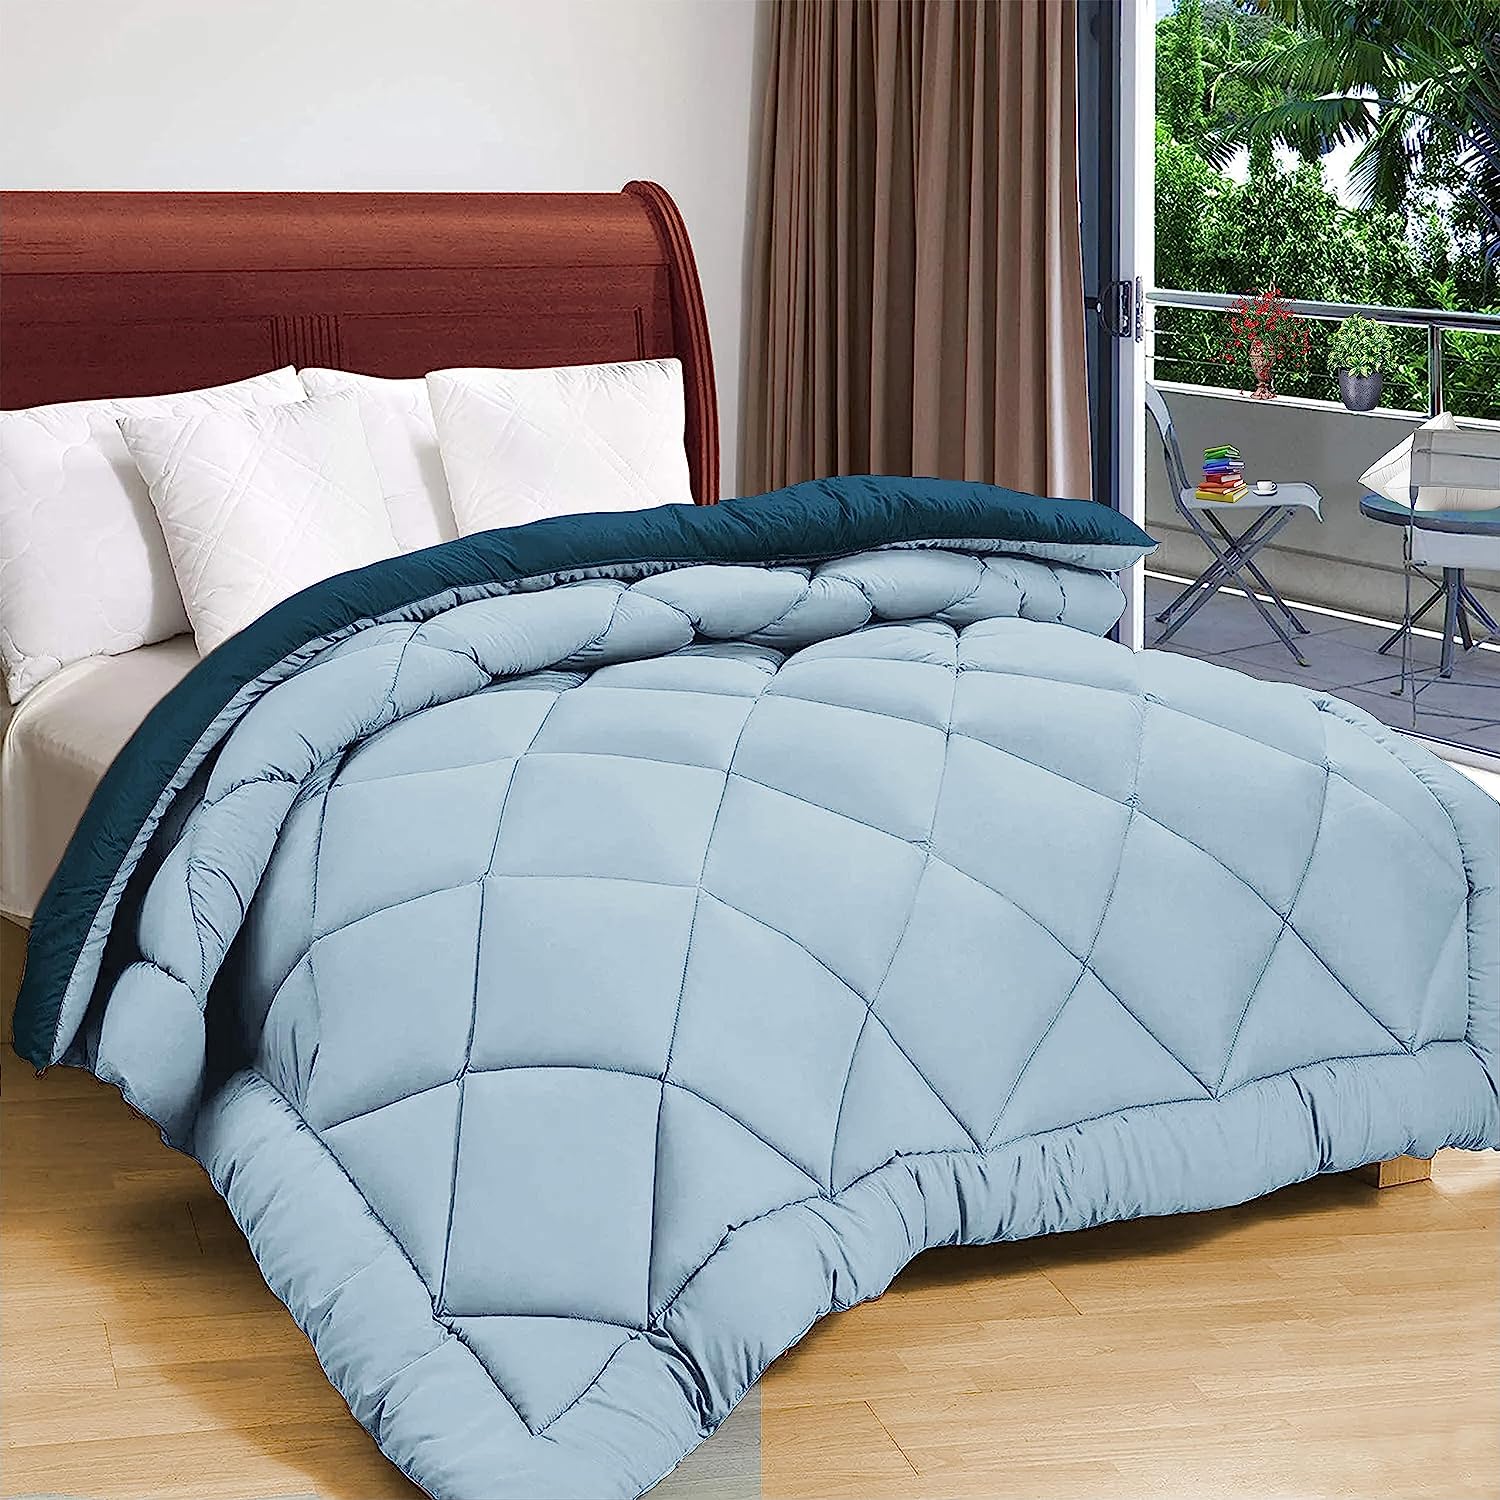 Double Bed Comforter Blanket